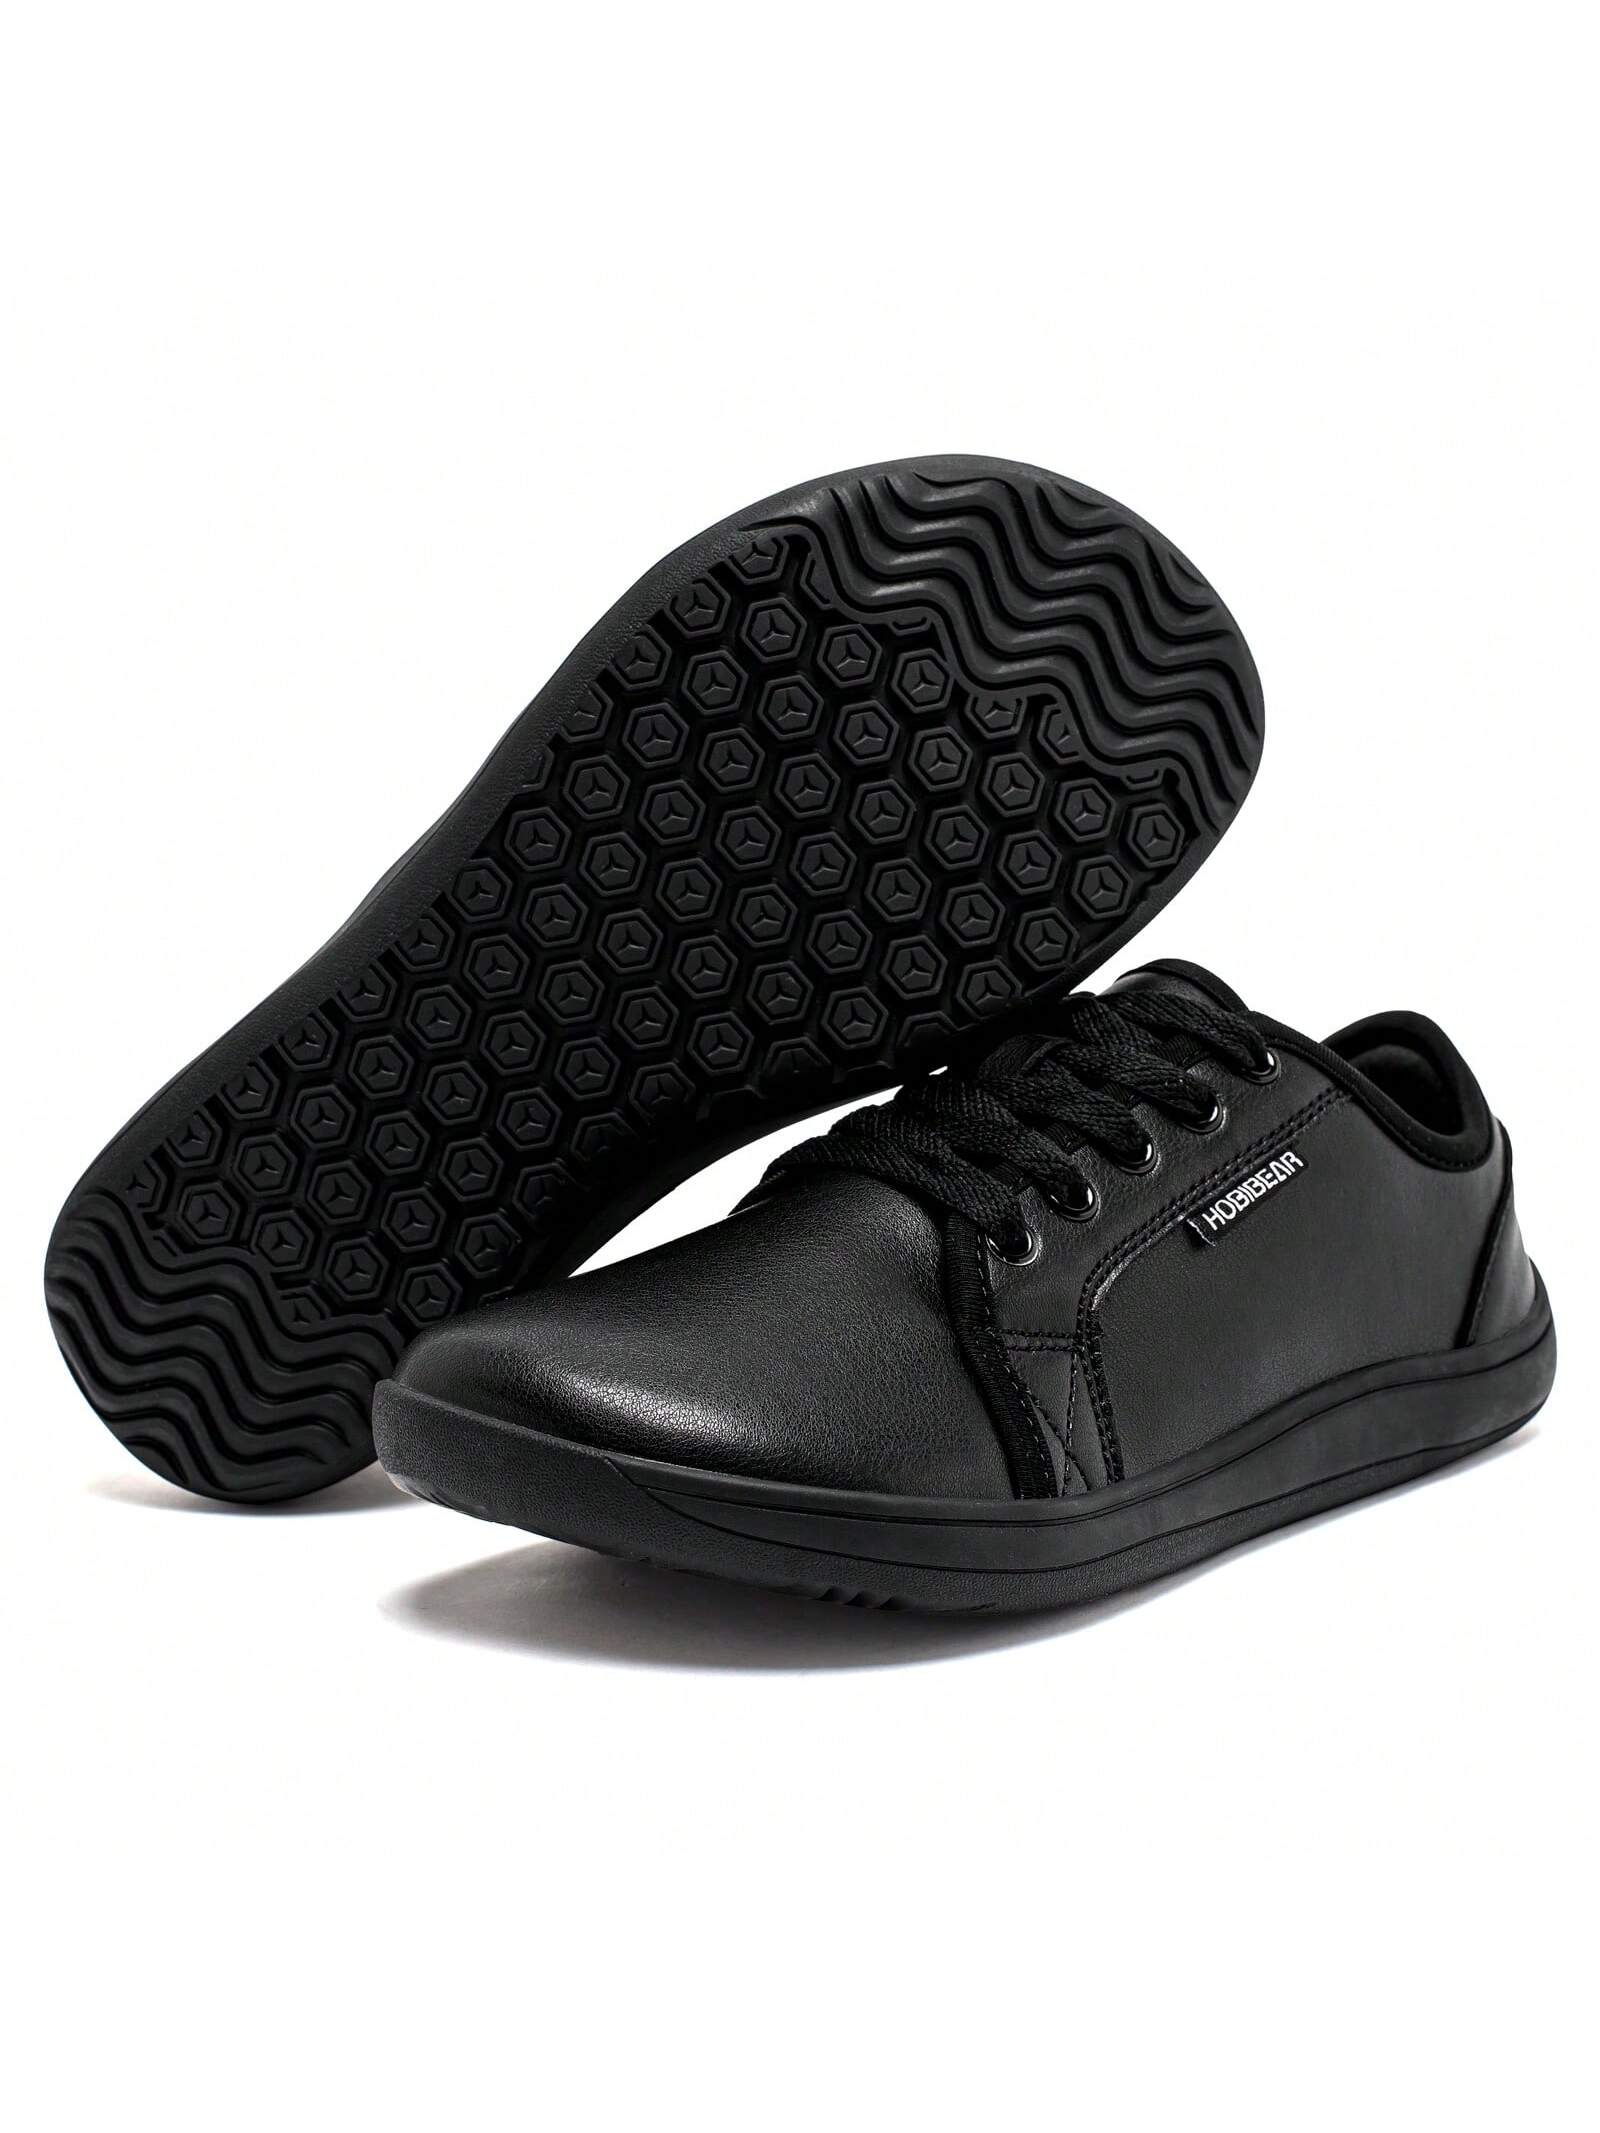 Спортивная обувь унисекс с широким носком, черный спортивная обувь унисекс с широким носком белый